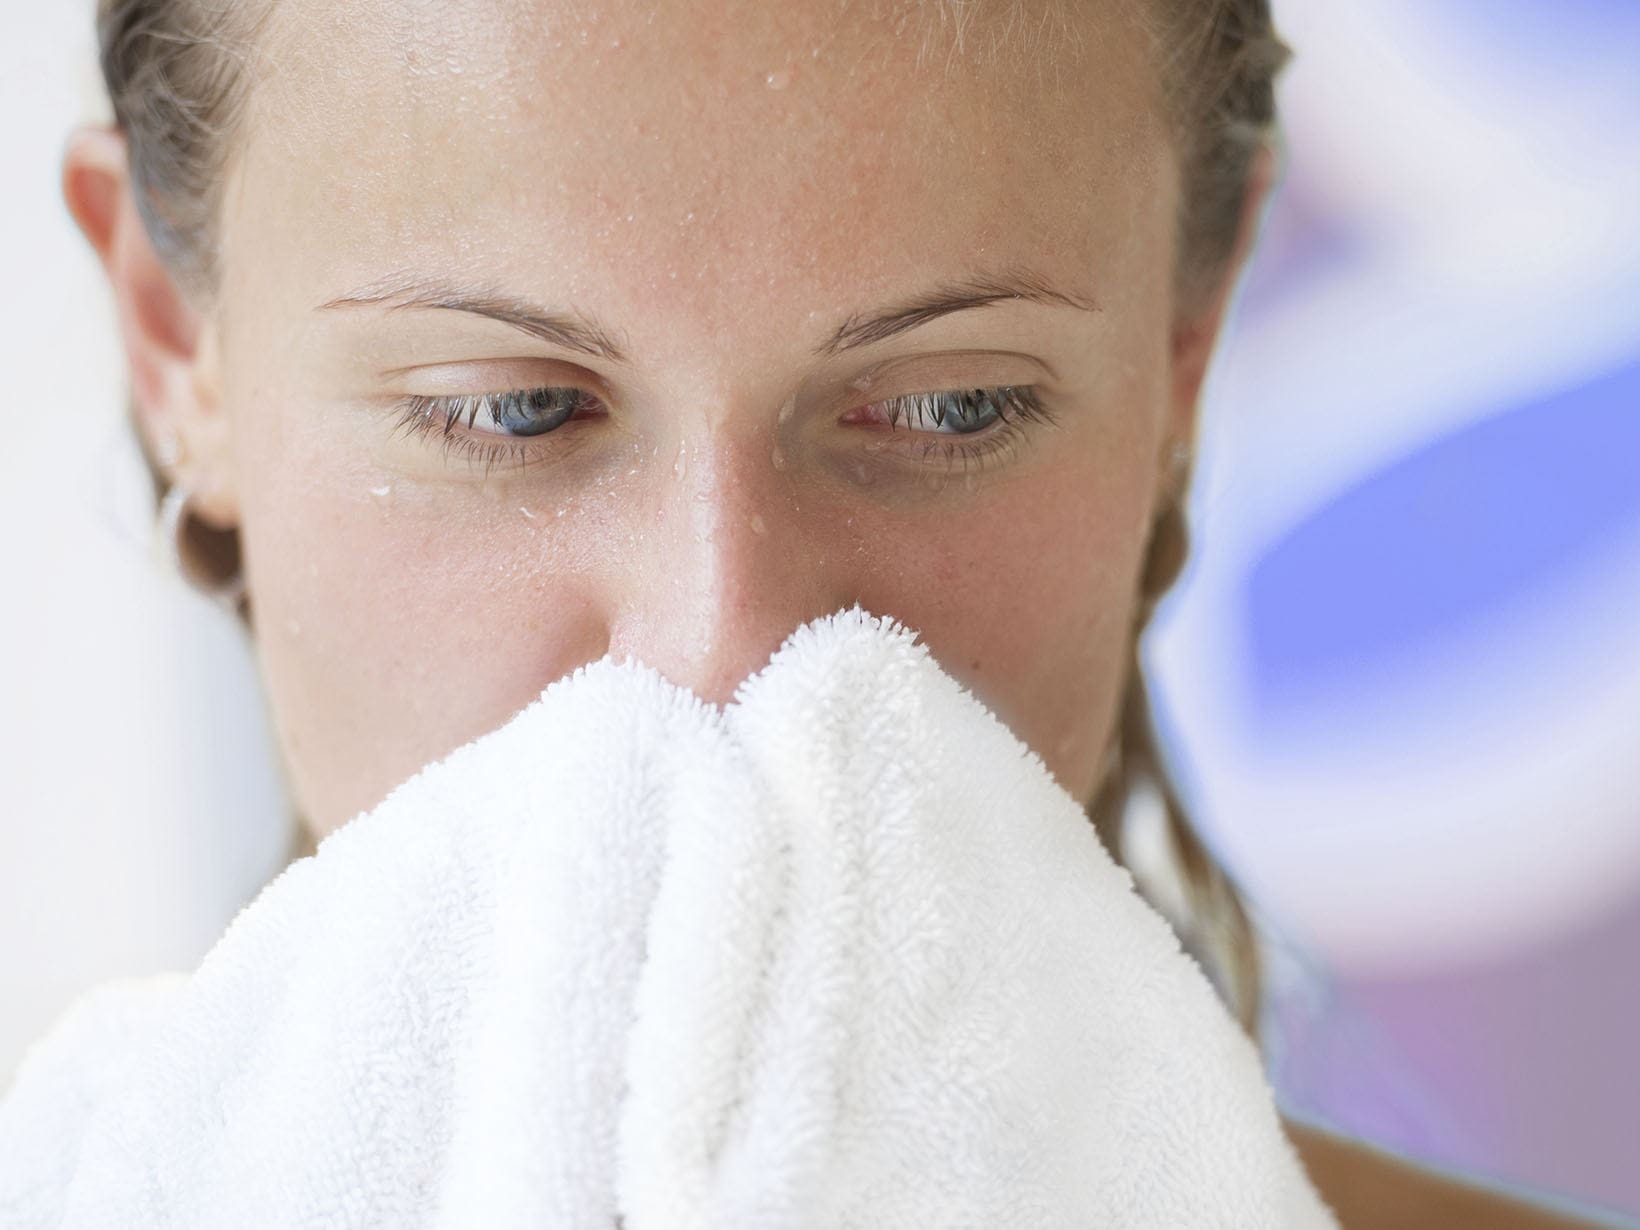 limpar o rosto com a toalha